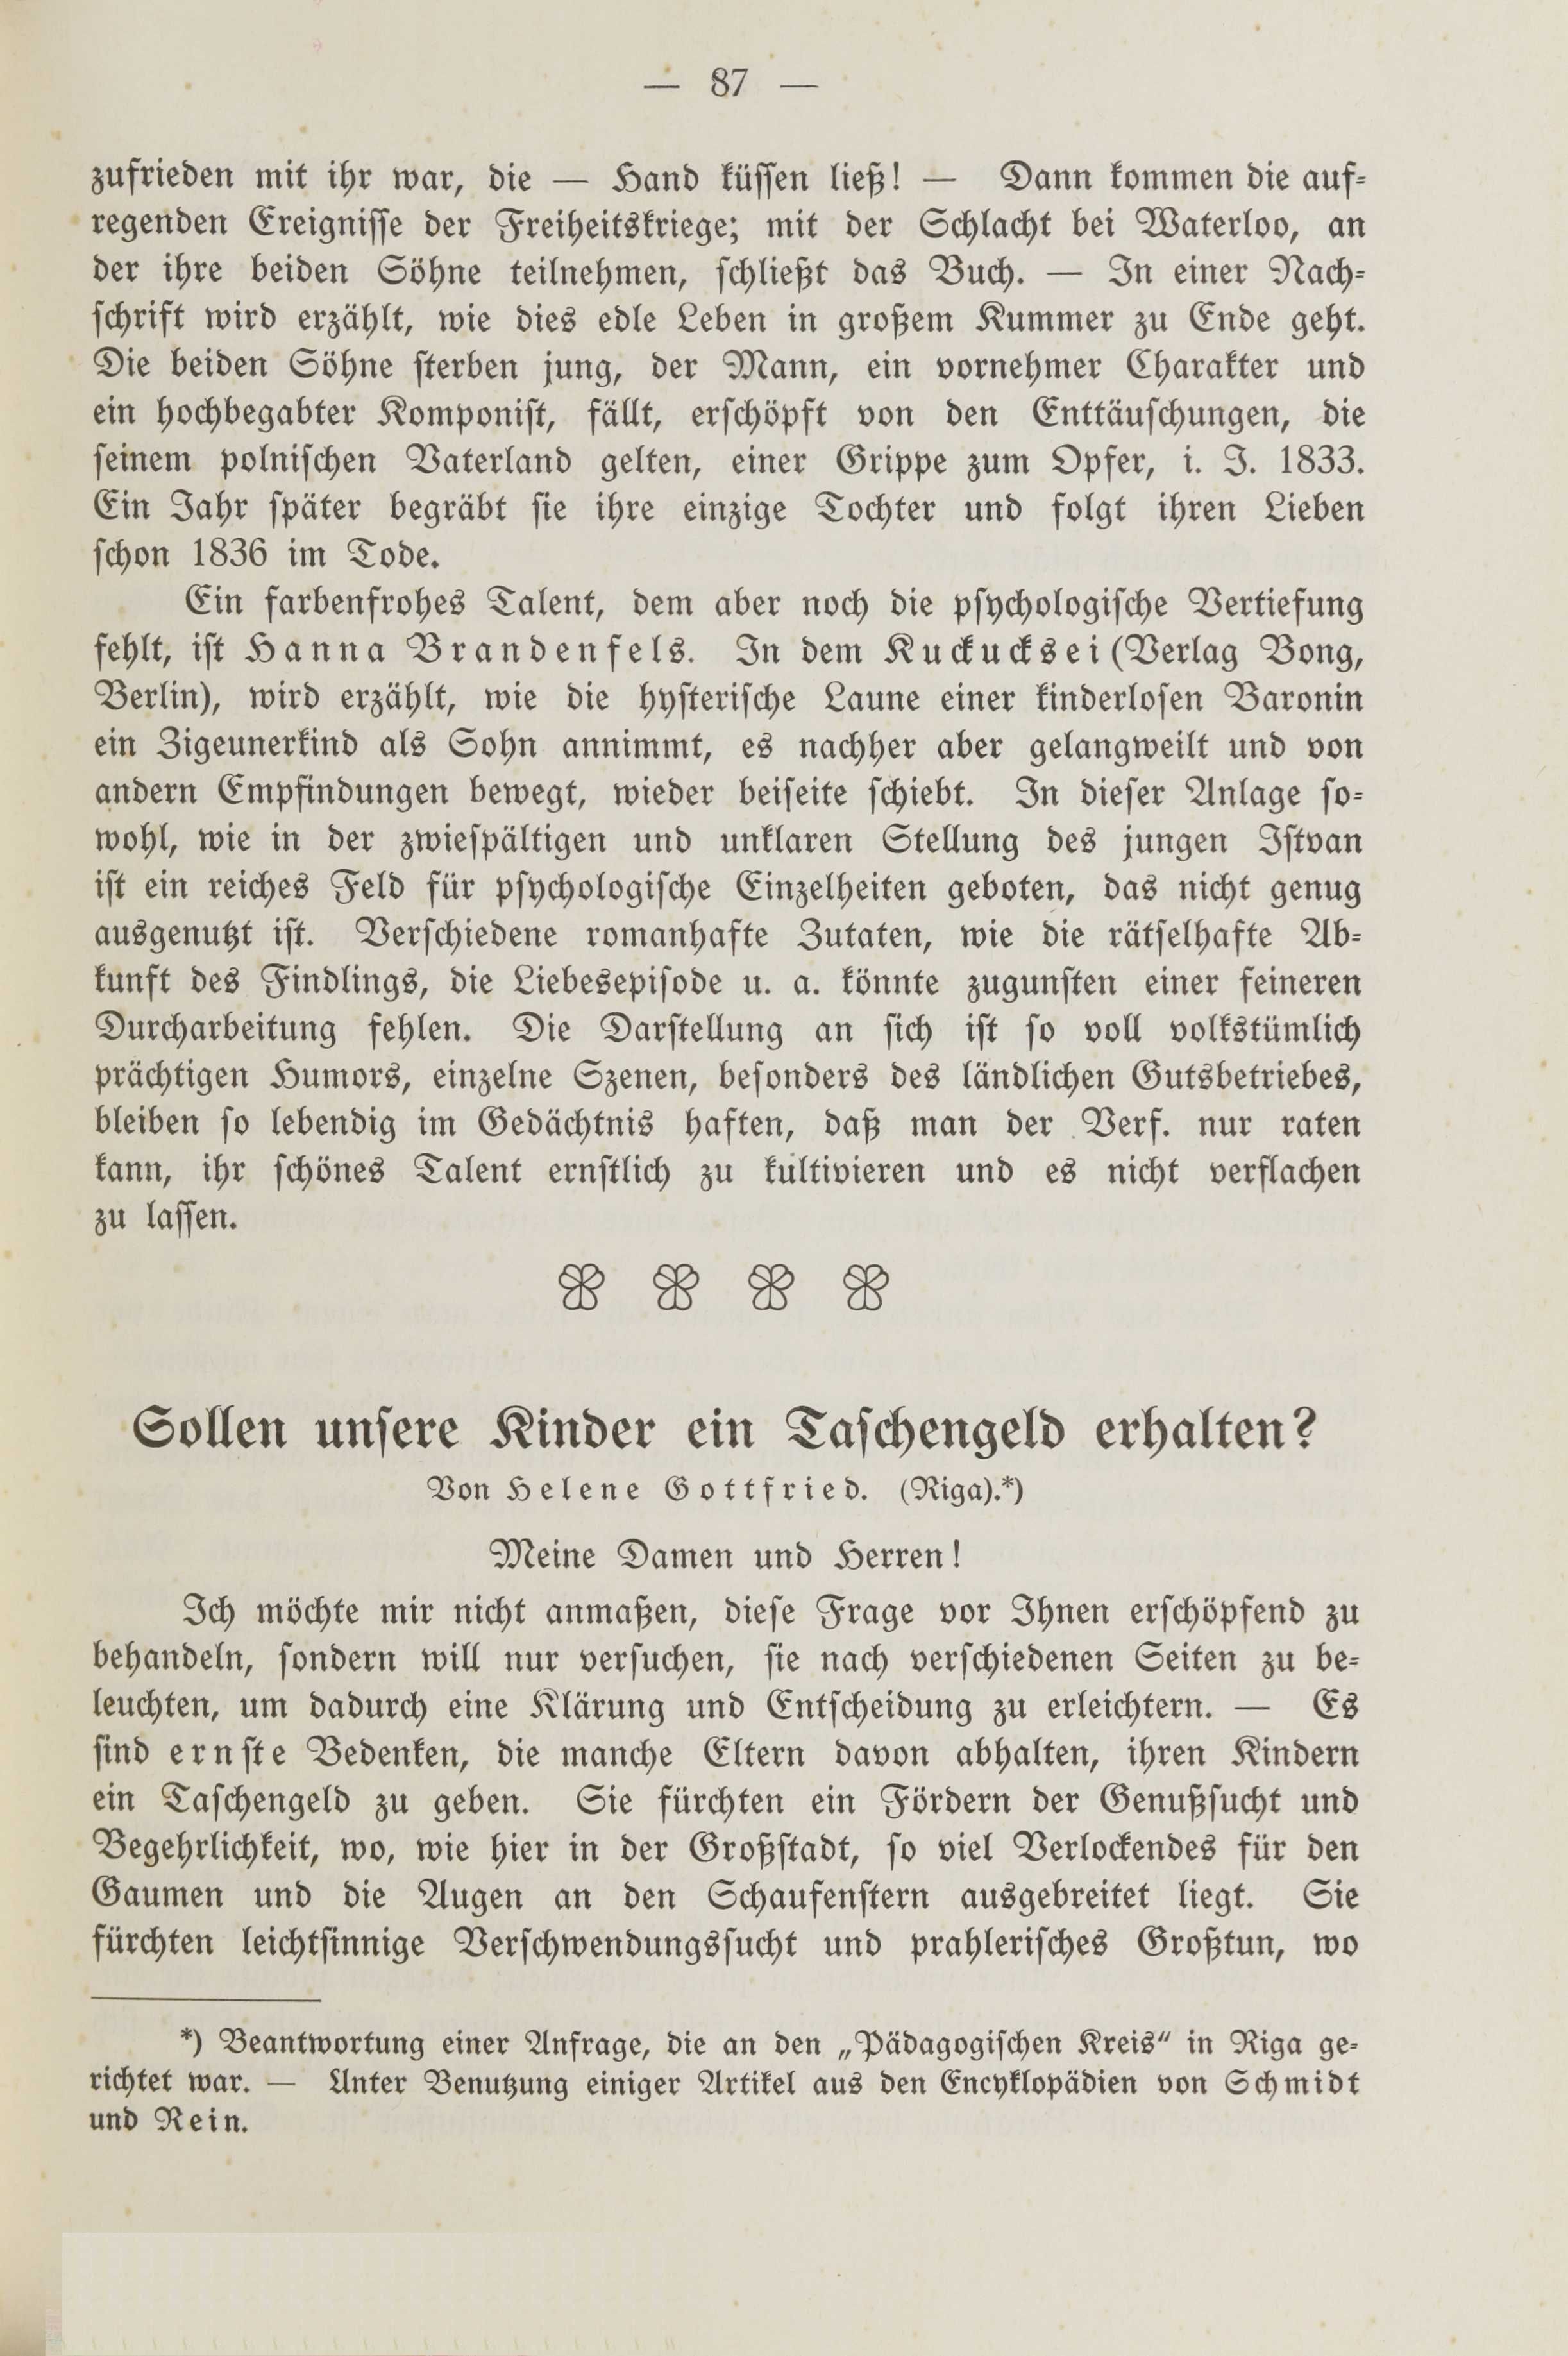 Deutsche Monatsschrift für Russland [2] (1913) | 91. (87) Main body of text